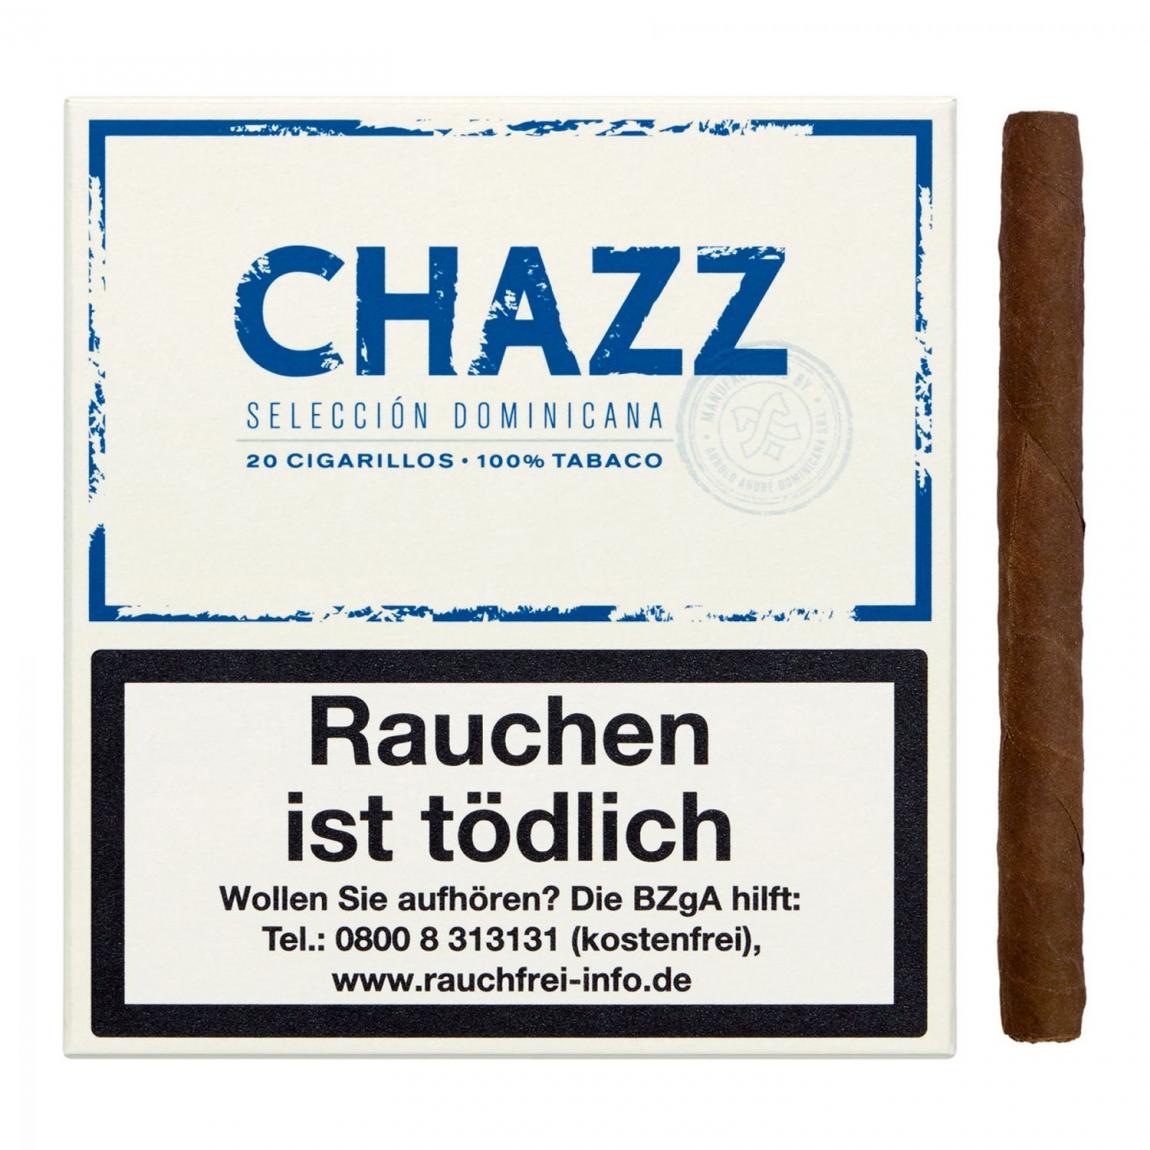 CHAZZ Cigarros - Seleccion Dominicana 10er Schachtel